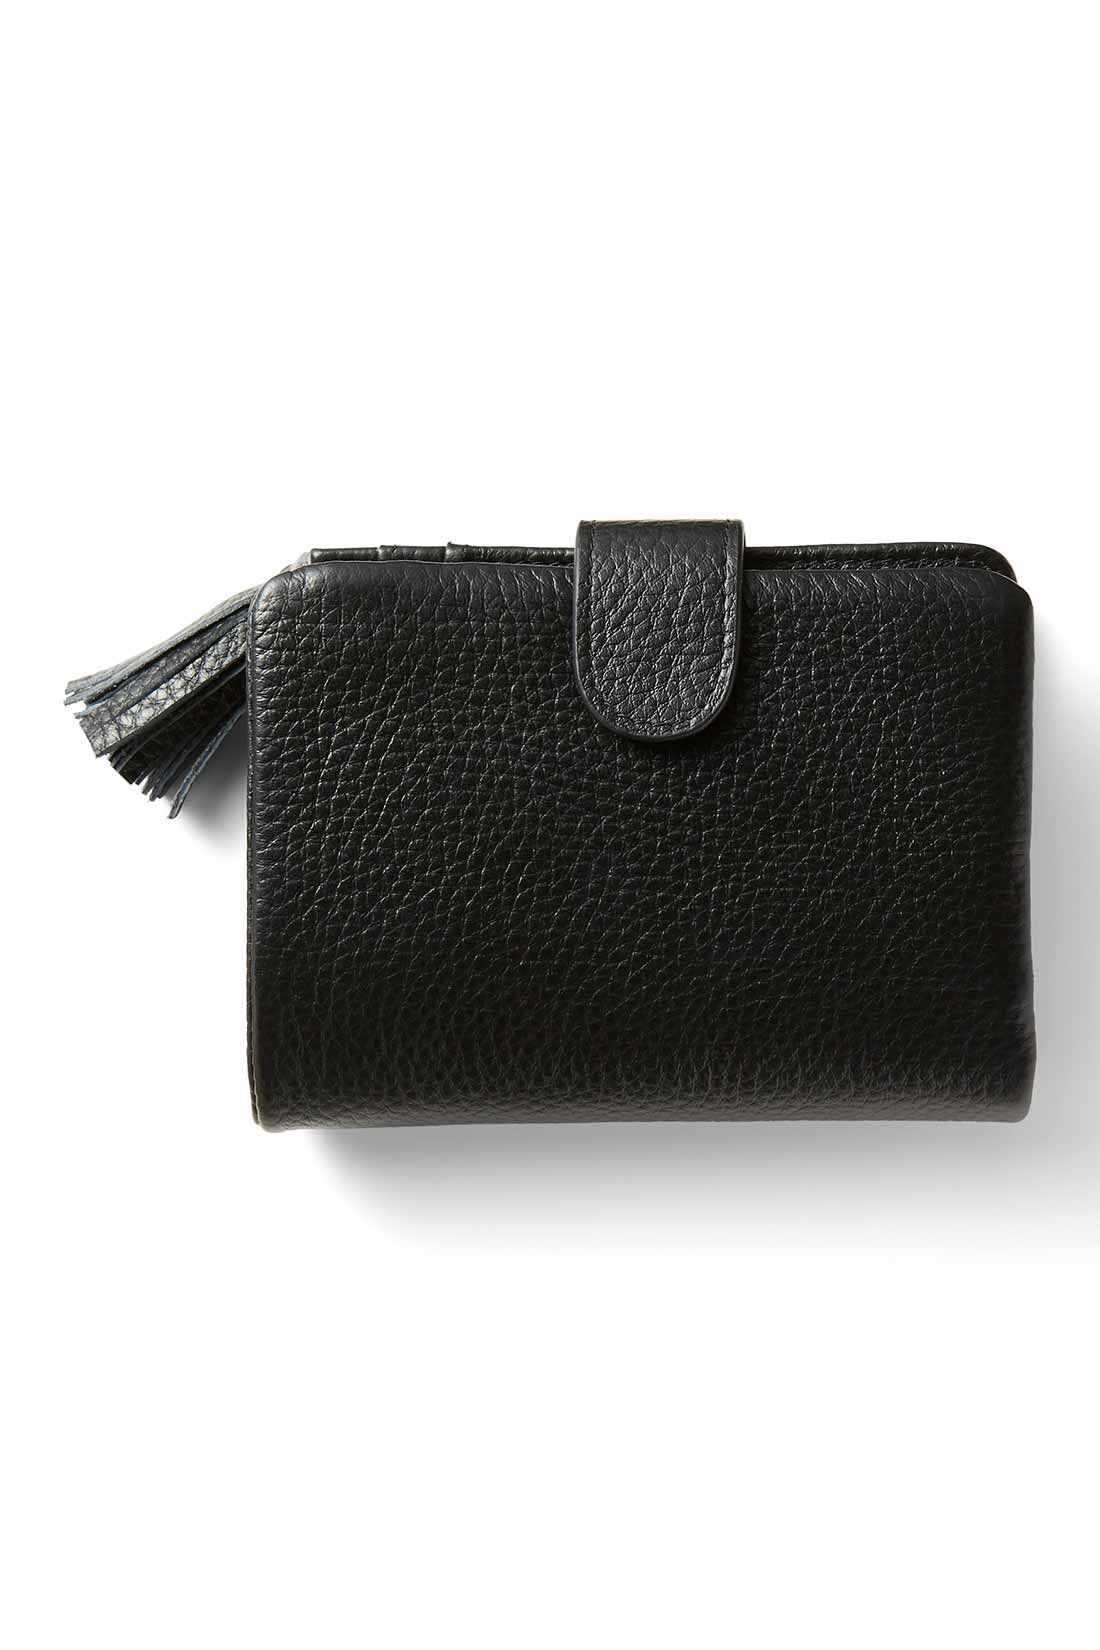 イディット|IEDIT[イディット]　くったり本革素材できれいめ二つ折り財布〈オレンジ〉